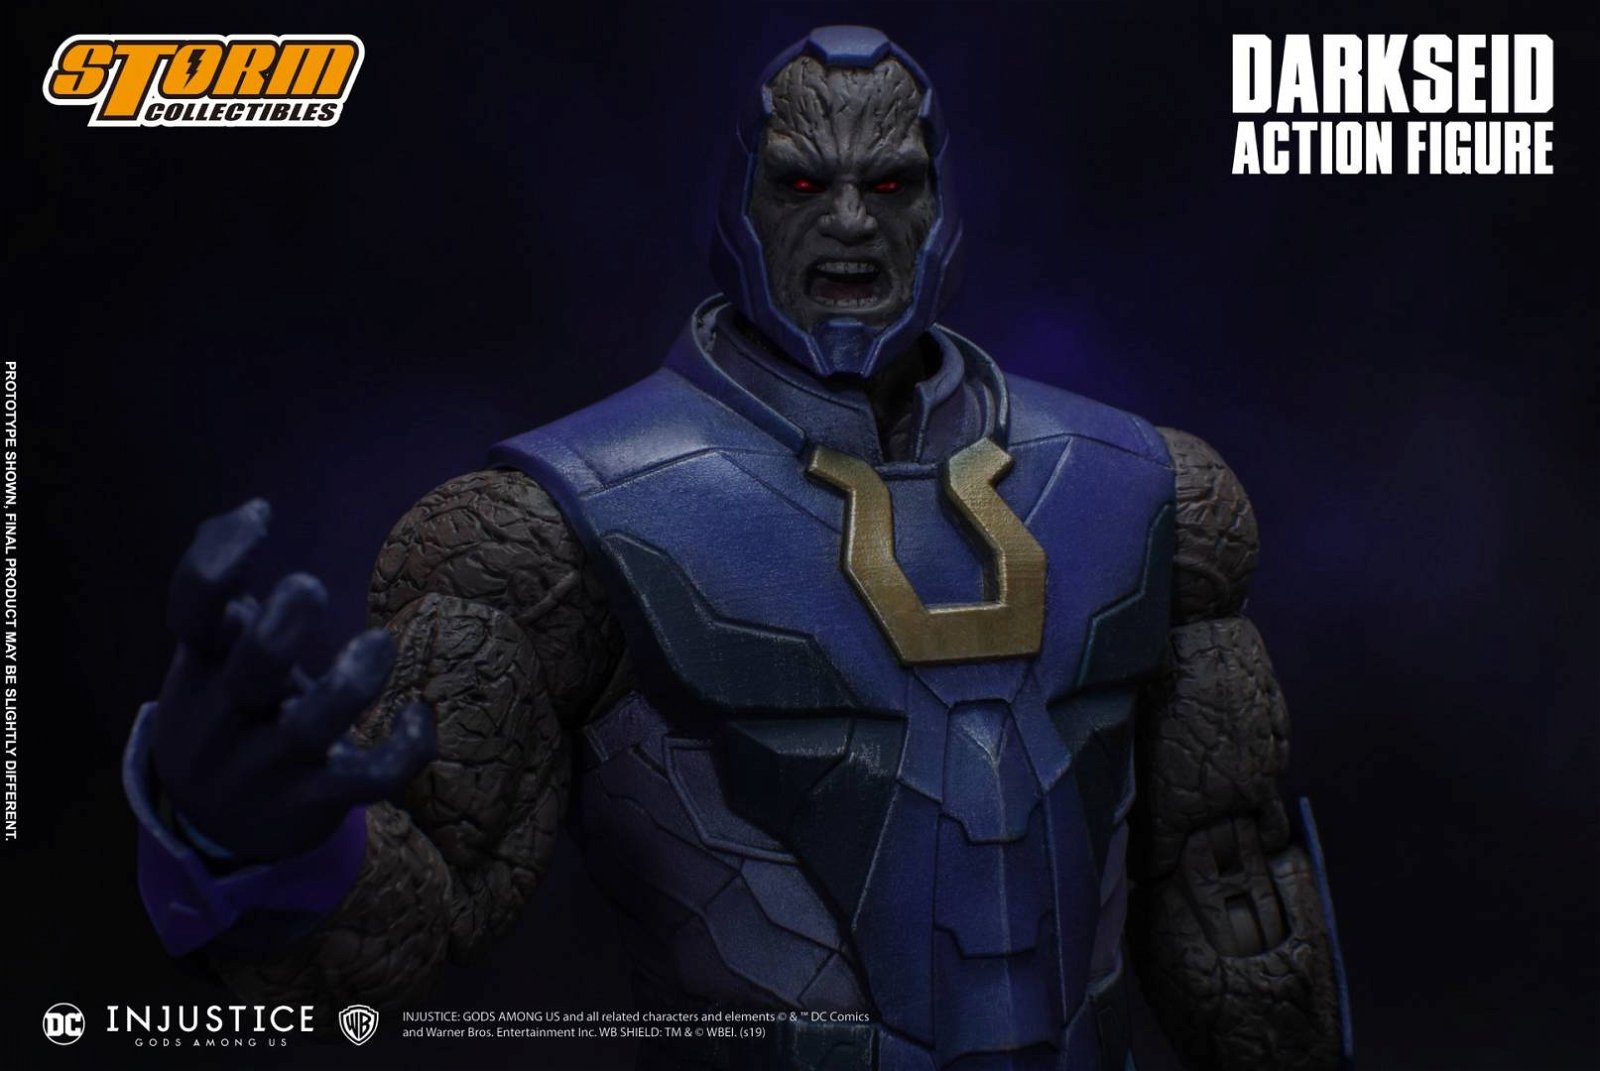 Immagine di Darkseid da Injustice – Storm Collectibles